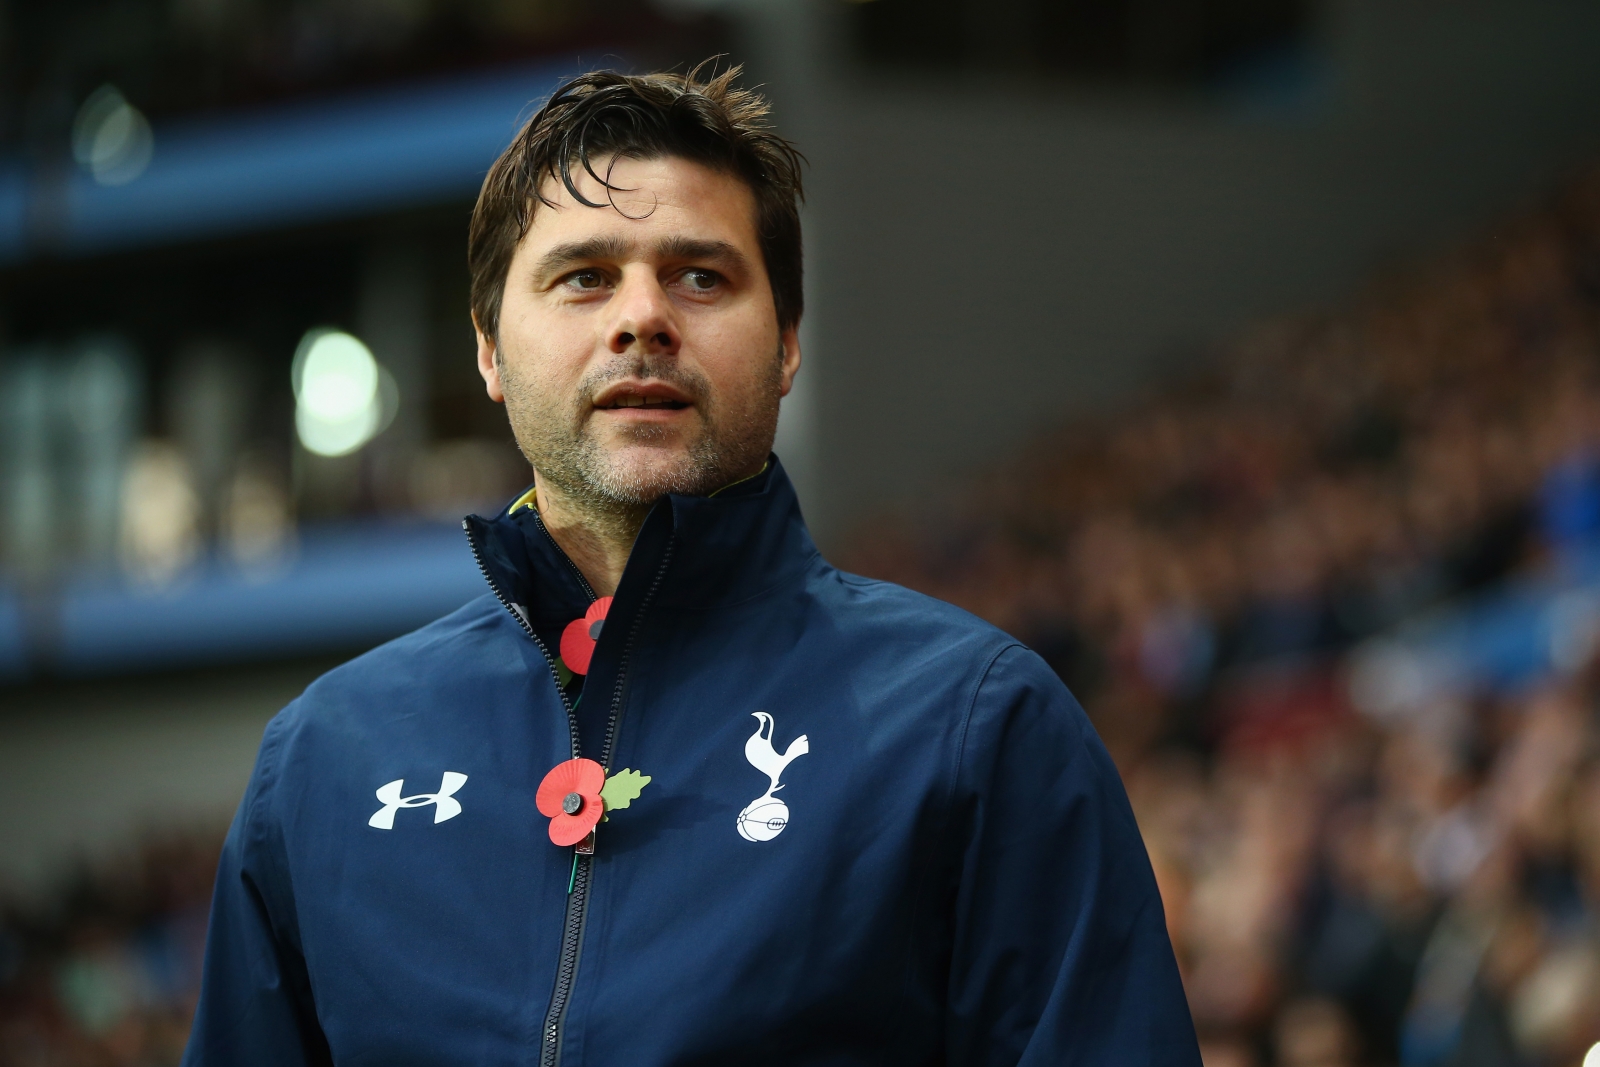 Mauricio Pochettino: I Am the Head Coach at Tottenham, Not Manager